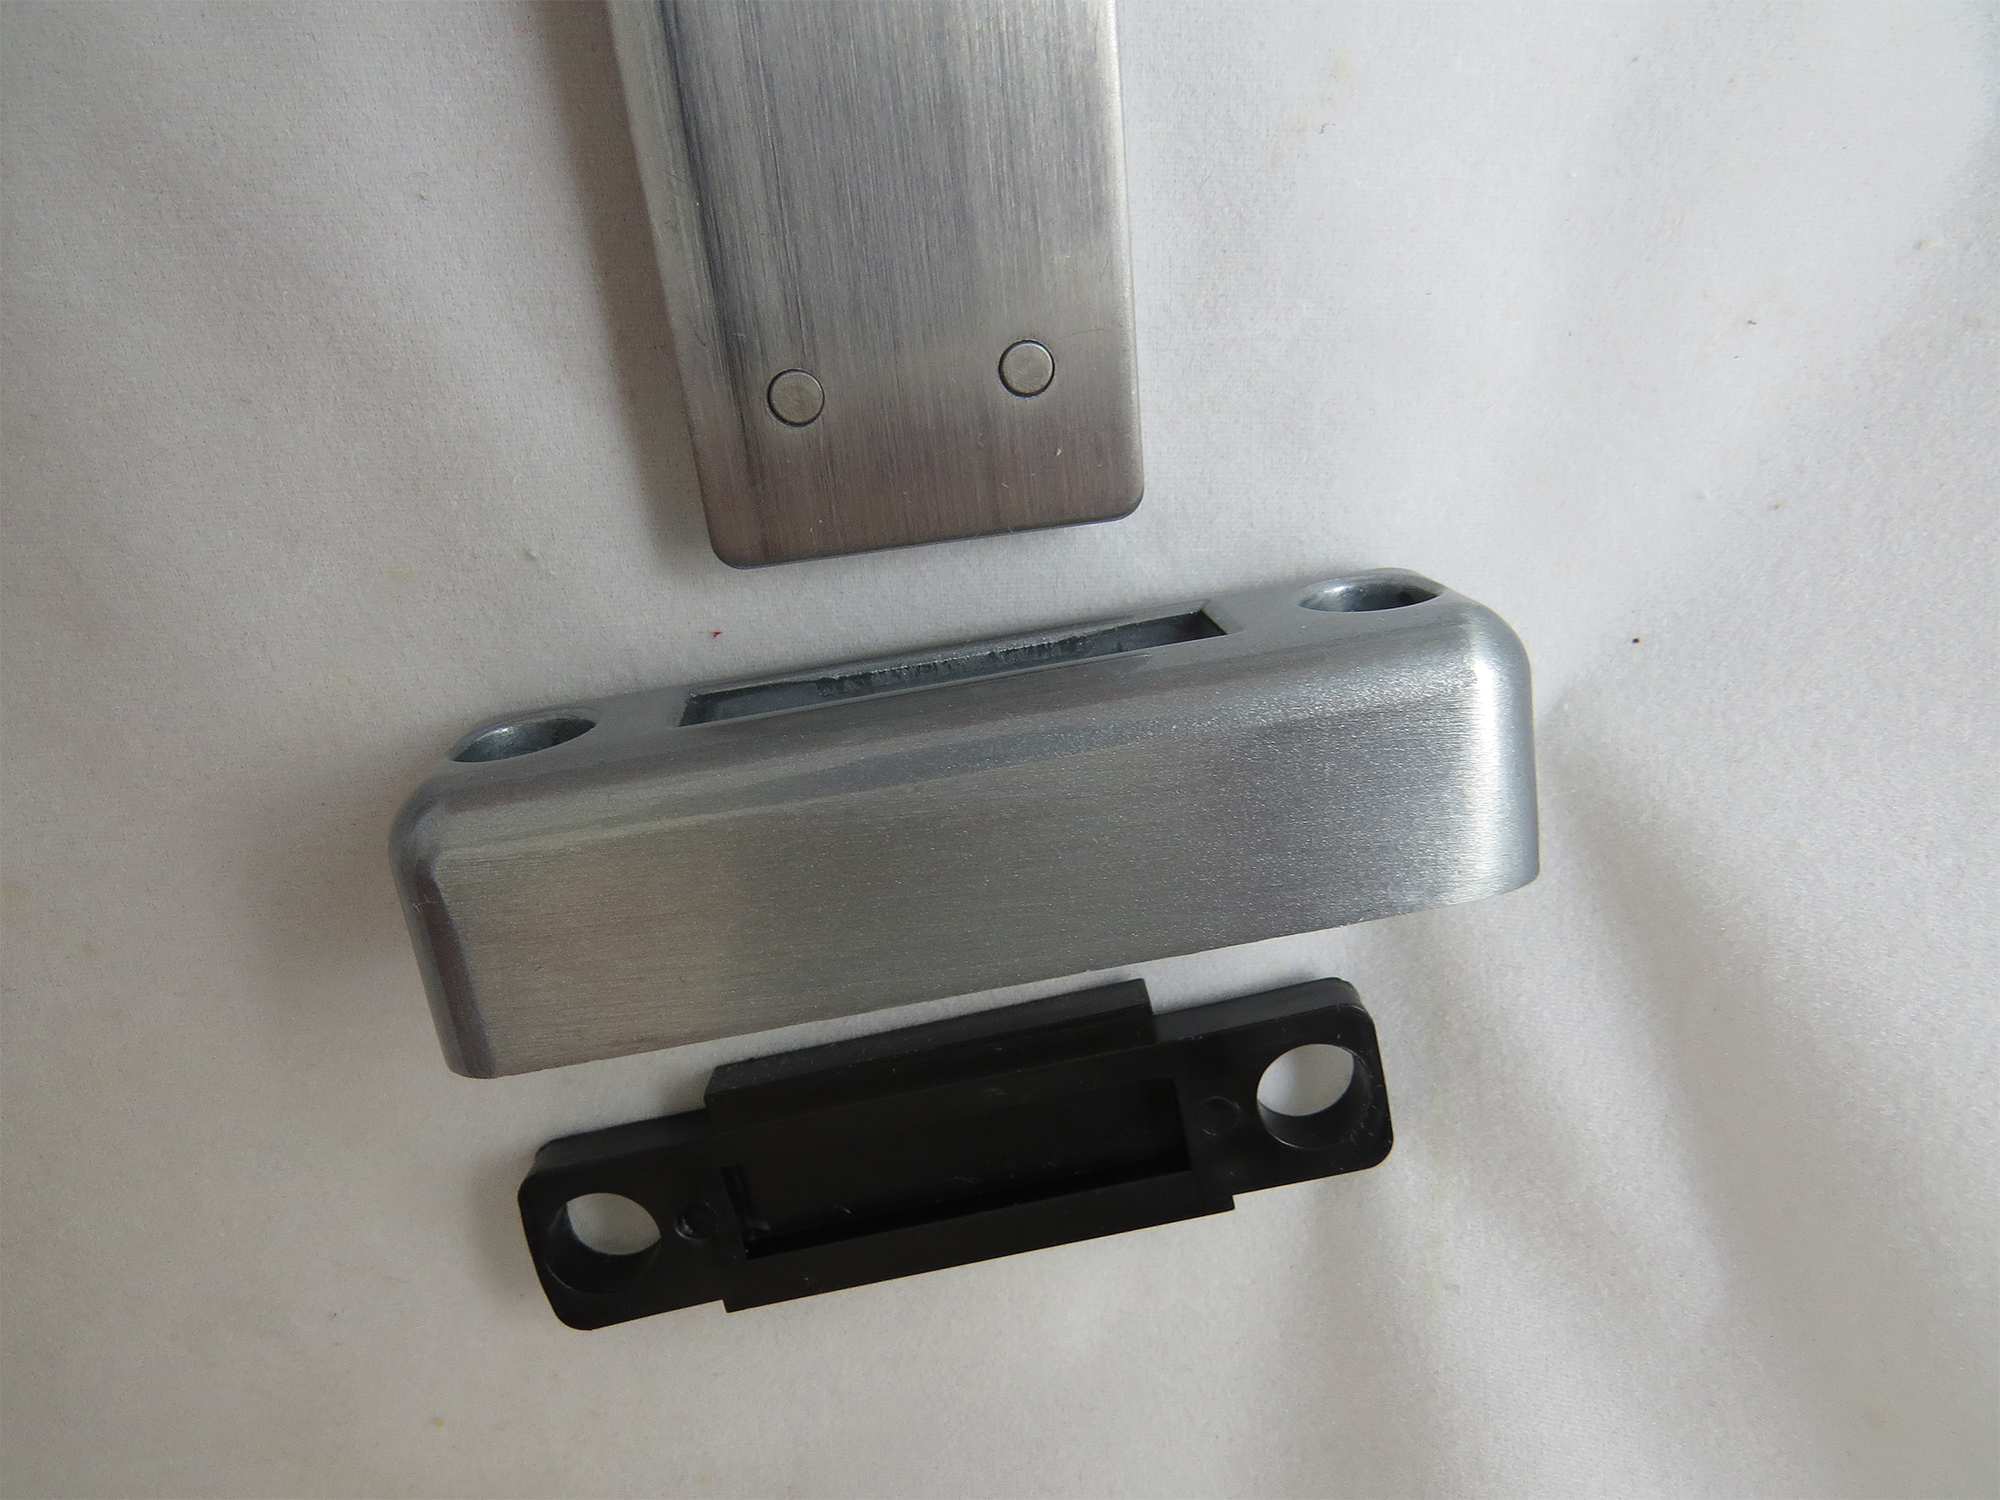 Lockey M220 Surface-Mount Slide-Bar Deadbolt Keypad Lock - Click Image to Close